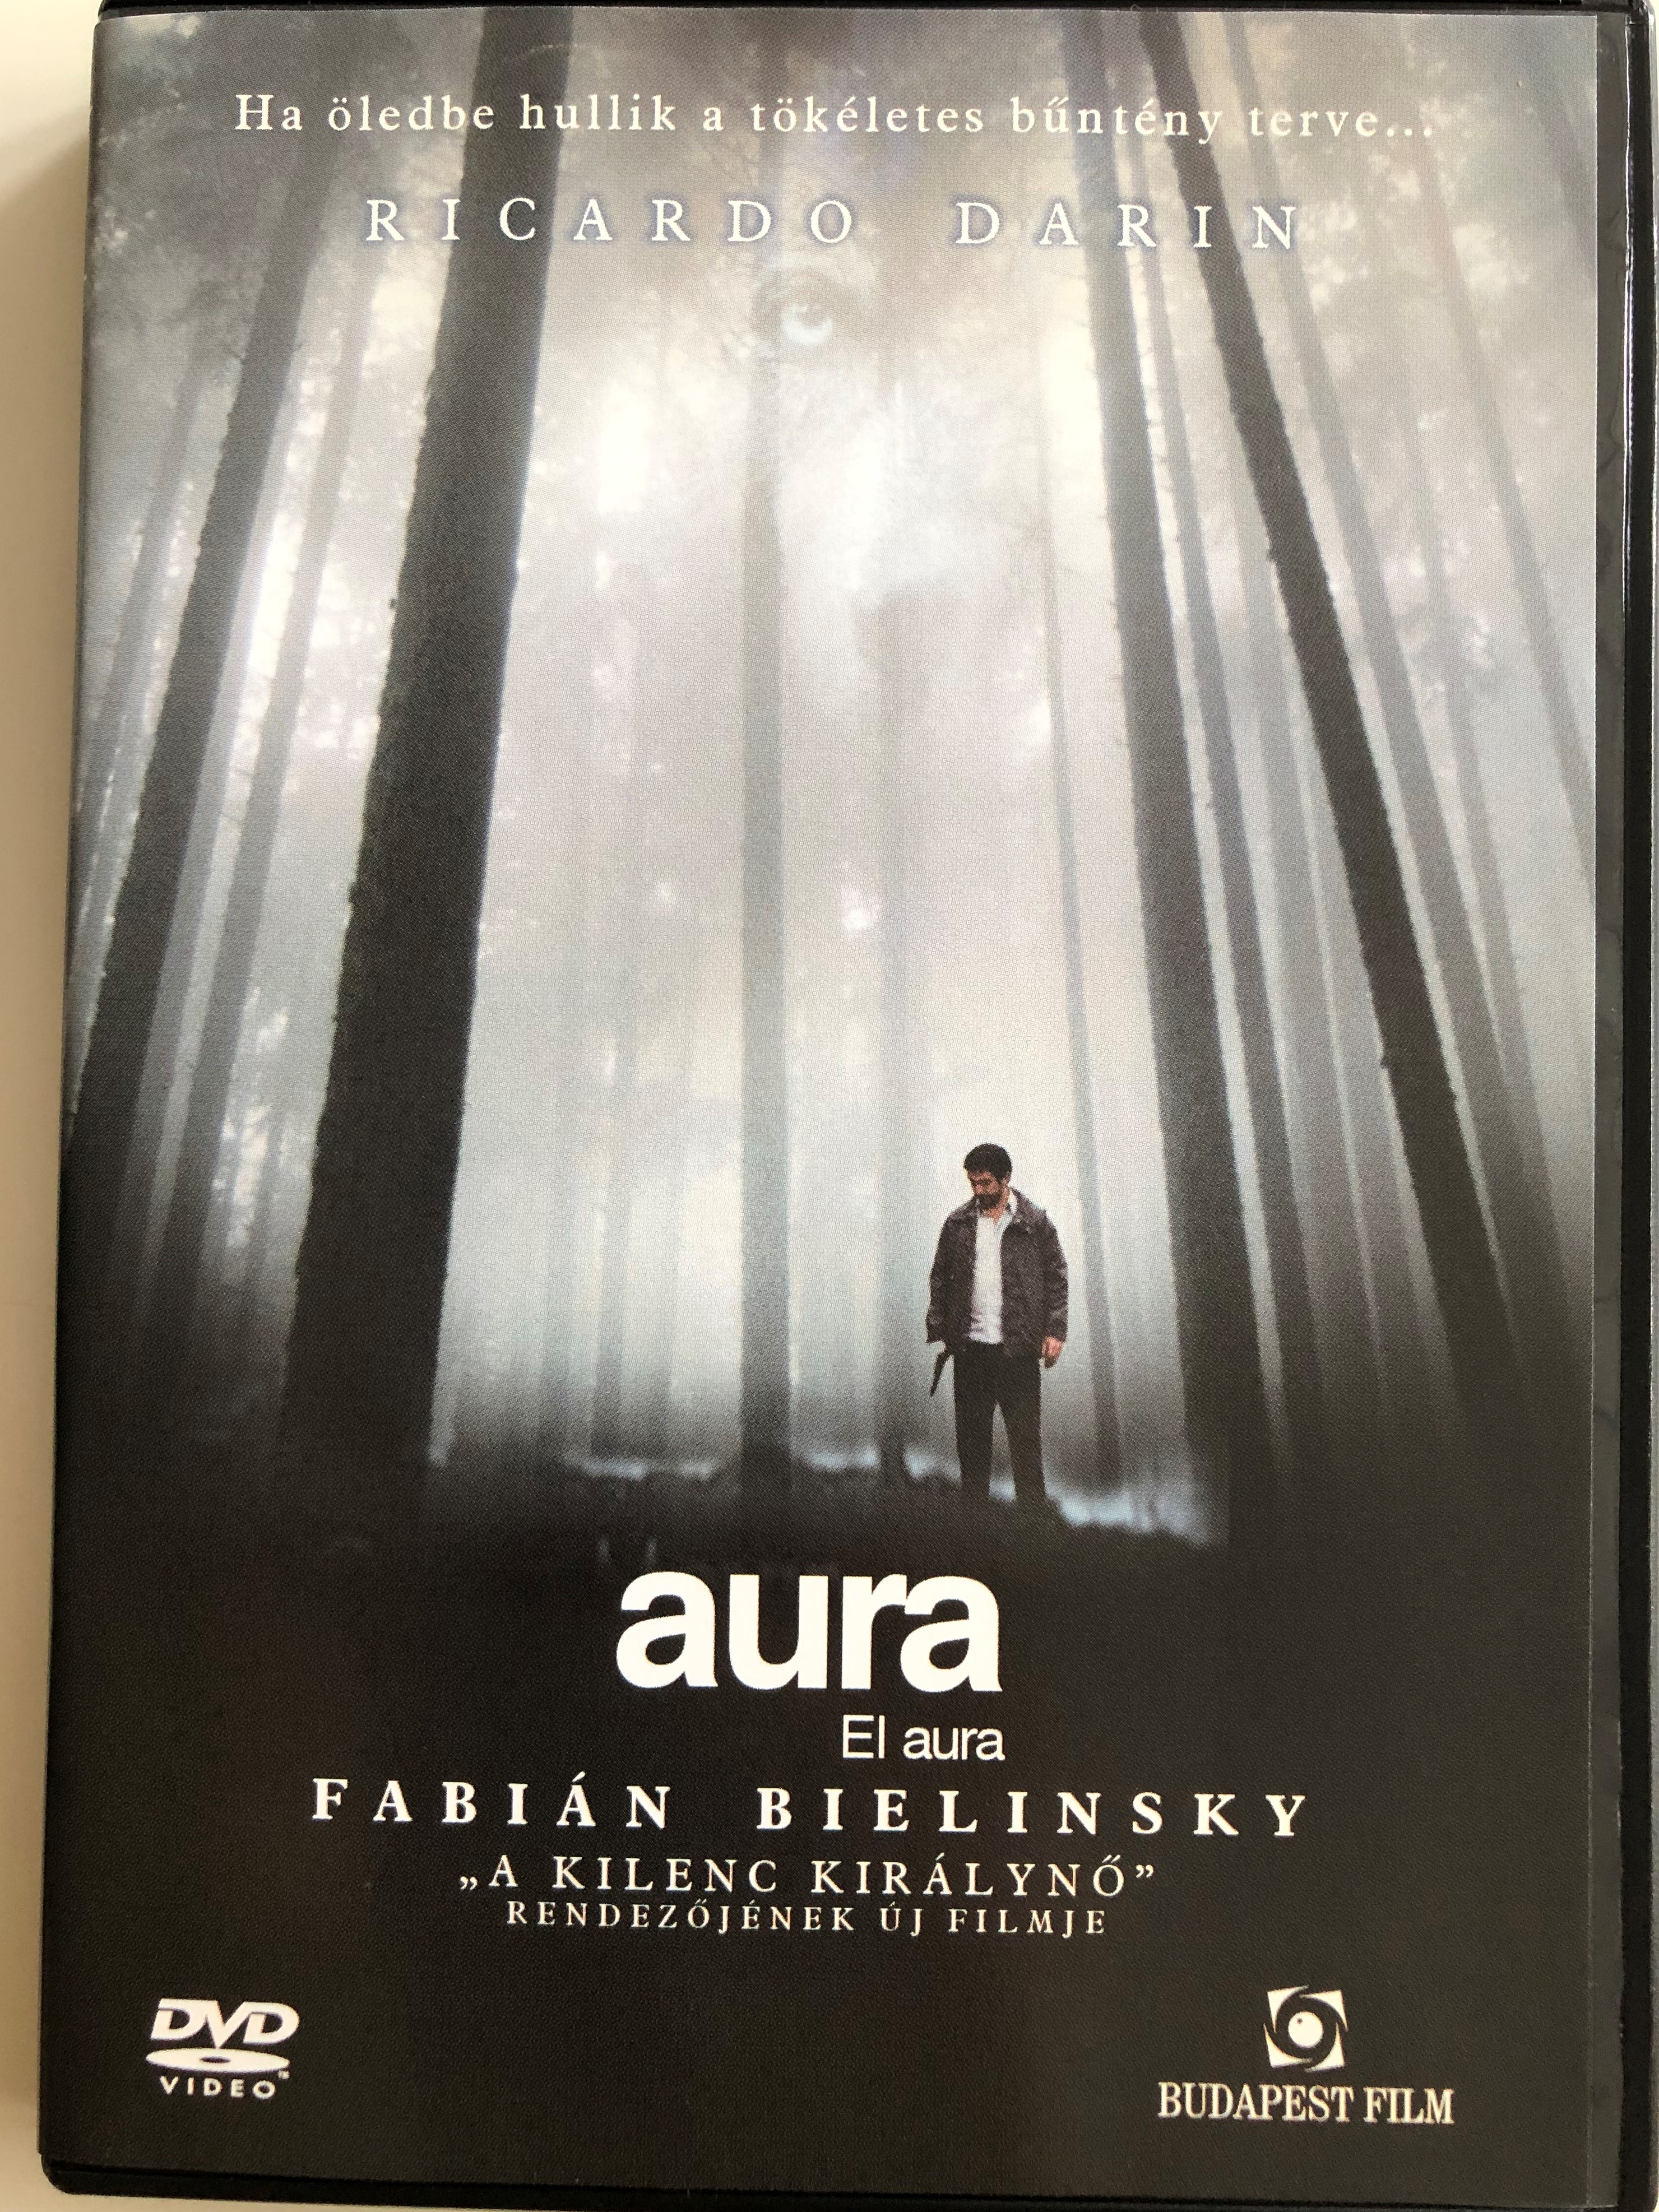 el-aura-dvd-2005-aura-the-aura-directed-by-fabi-n-bielinsky-starring-ricardo-dar-n-dolores-fonzi-alejandro-awada-pablo-cedr-n-jorge-d-elia-1-.jpg